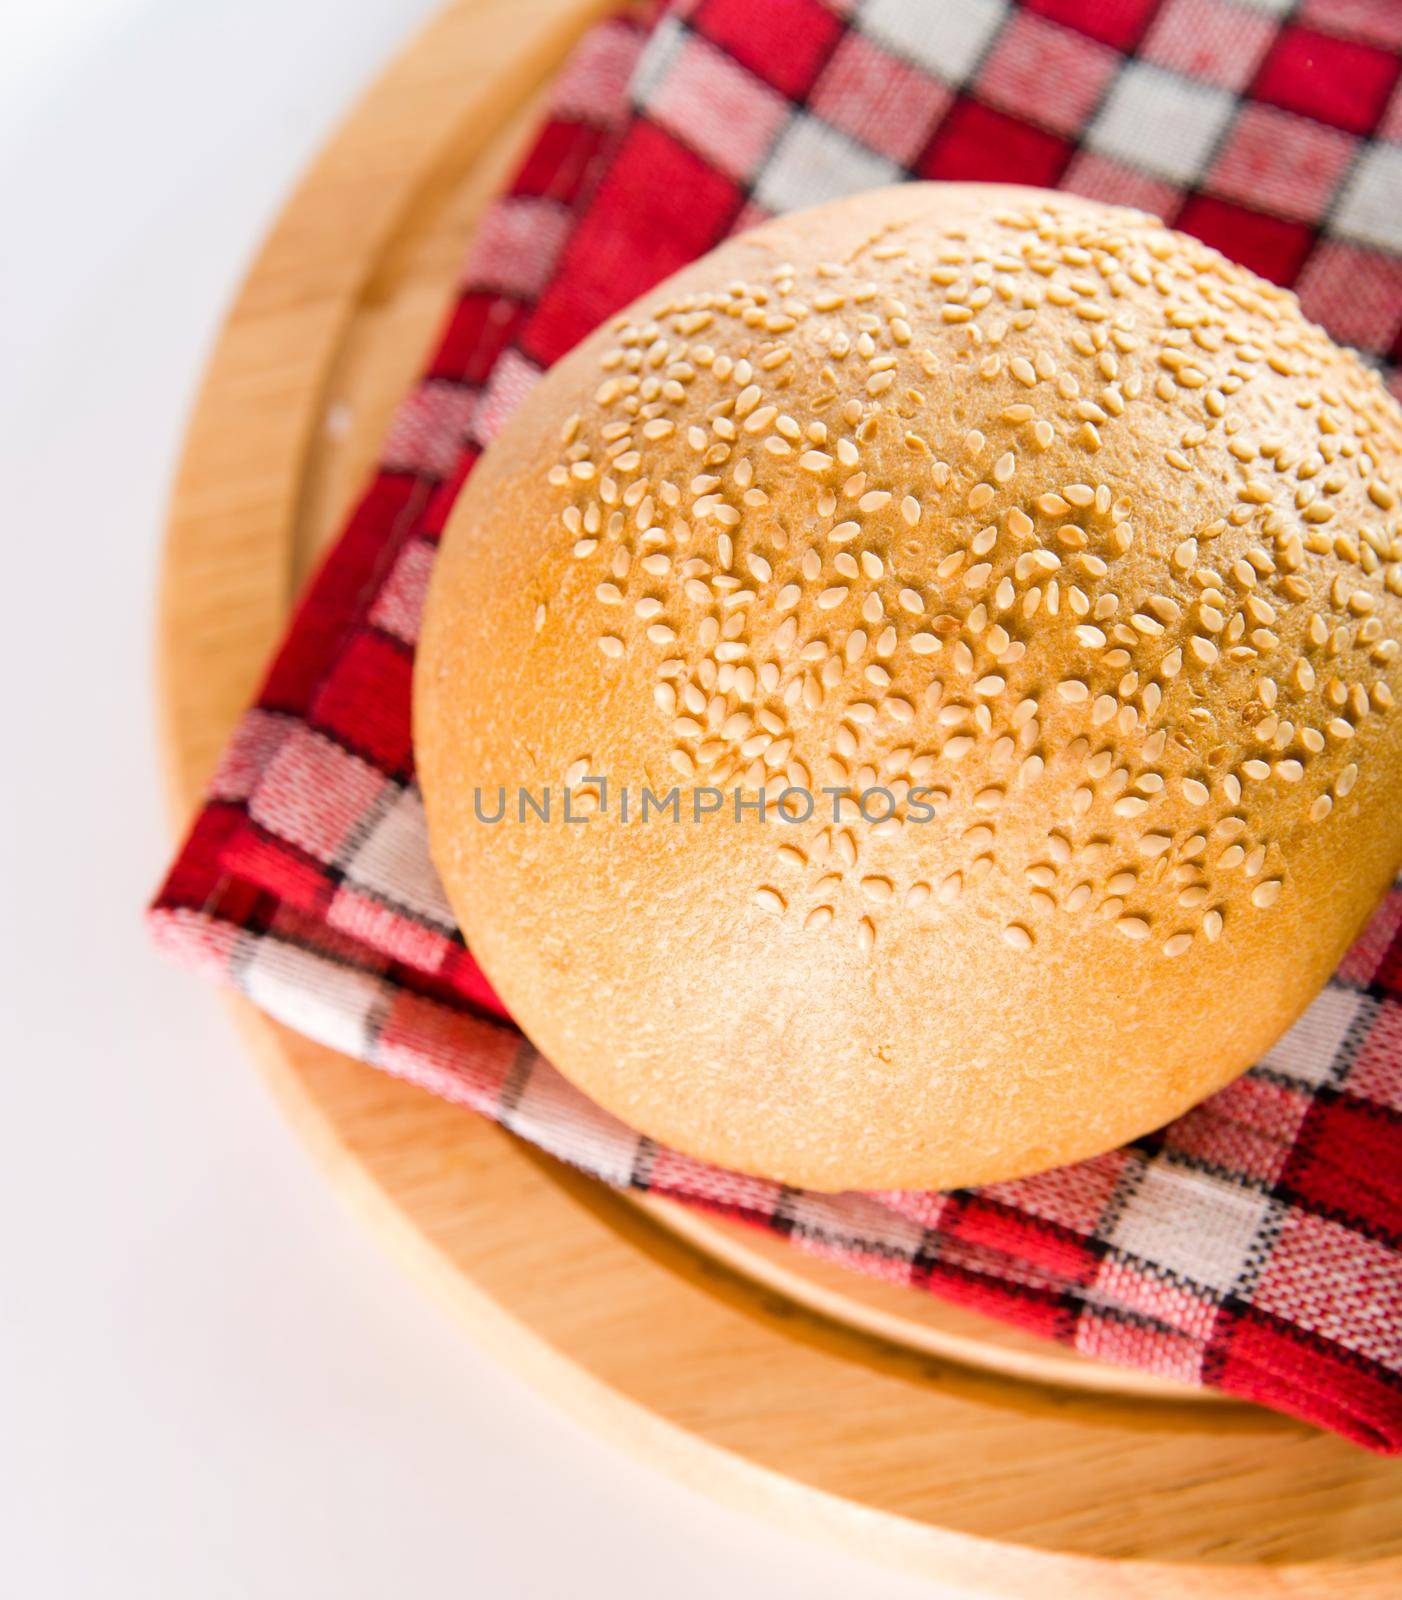 newly baked bread by tan4ikk1